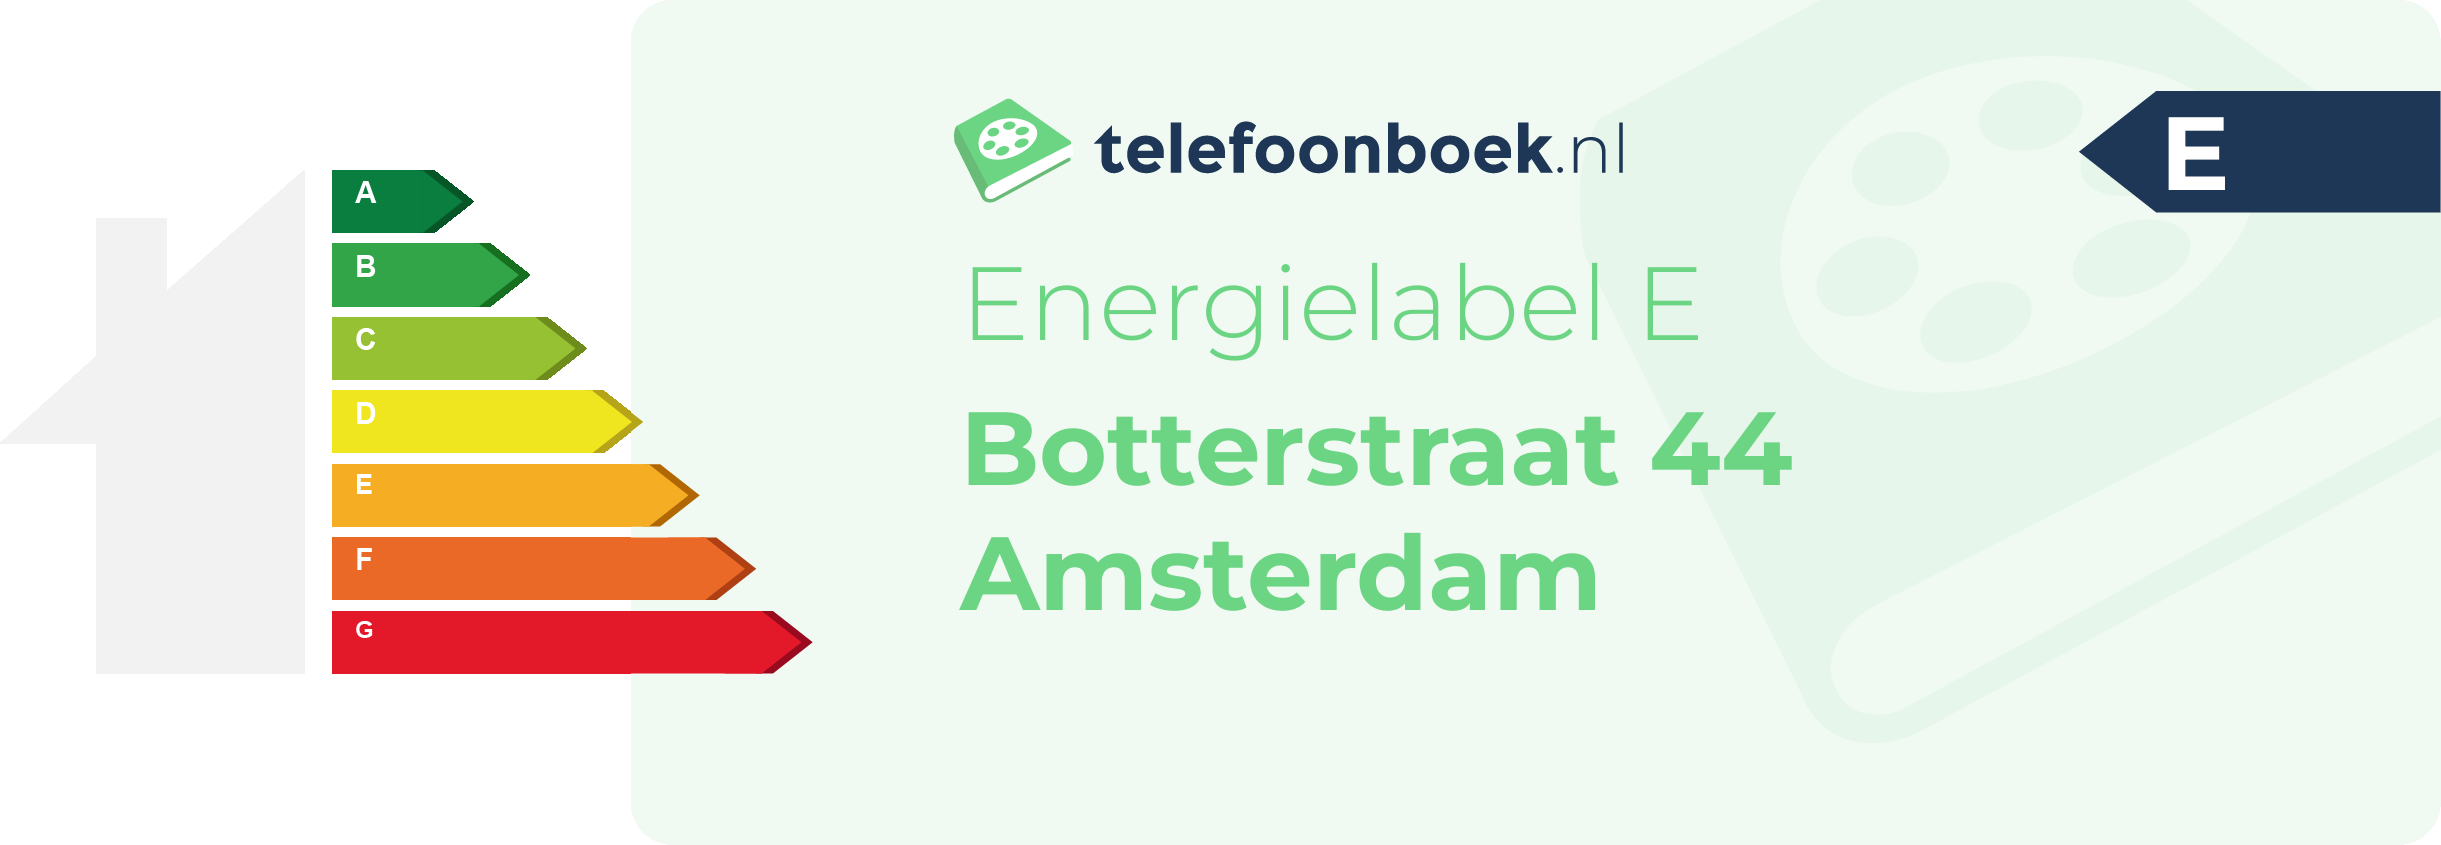 Energielabel Botterstraat 44 Amsterdam